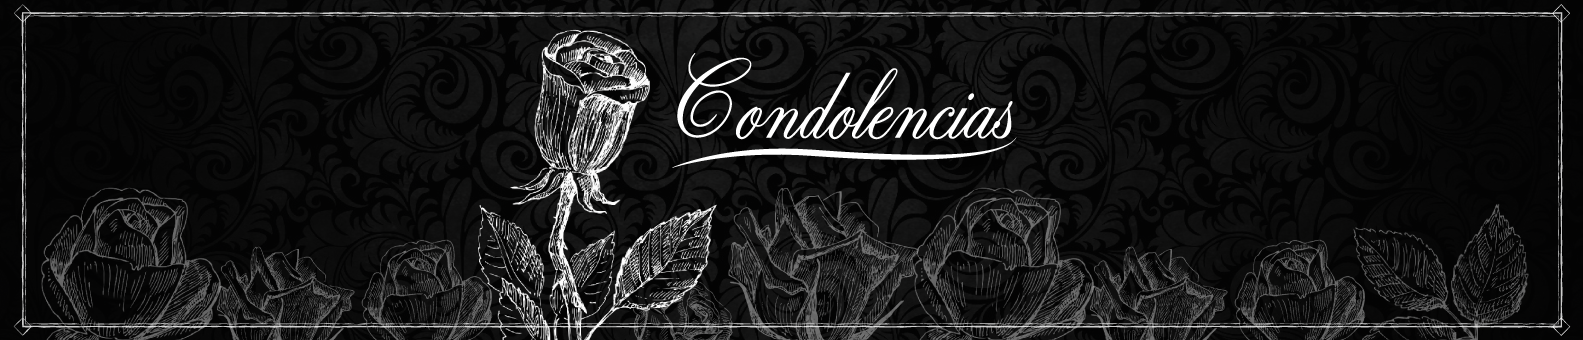 banner_condolencias